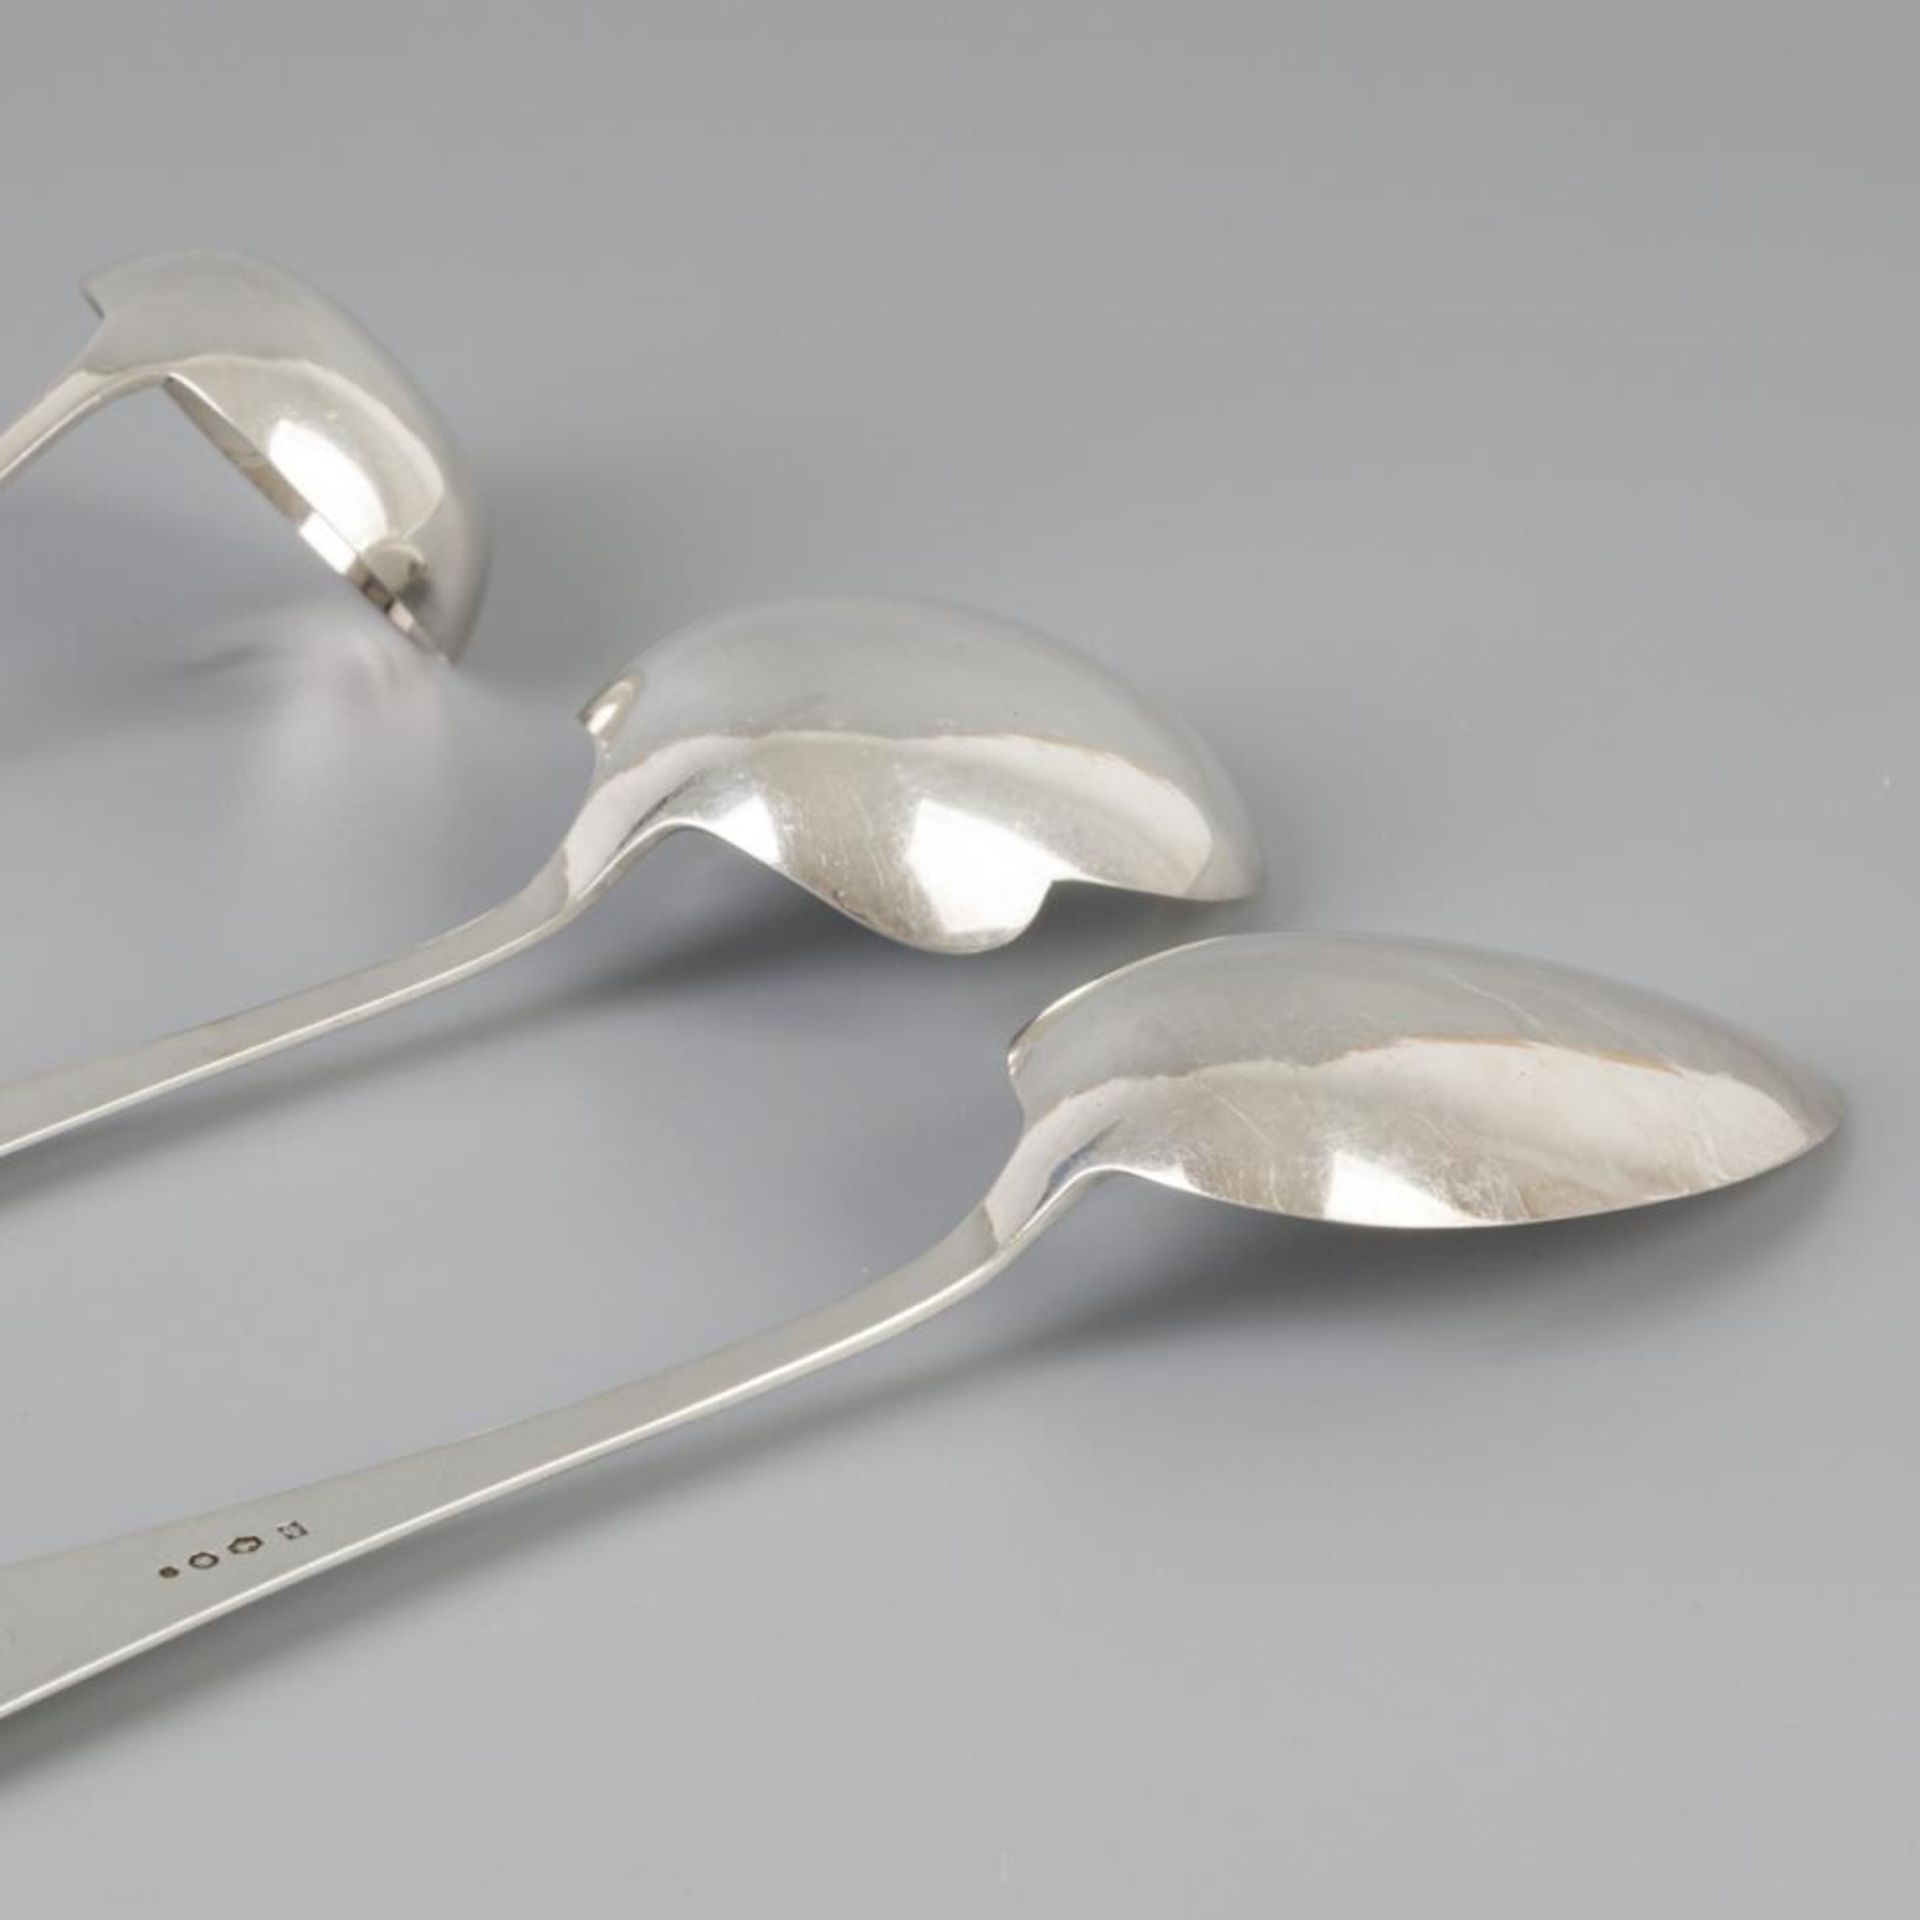 3 piece set of ladles "Haags Lofje" silver. - Bild 4 aus 7